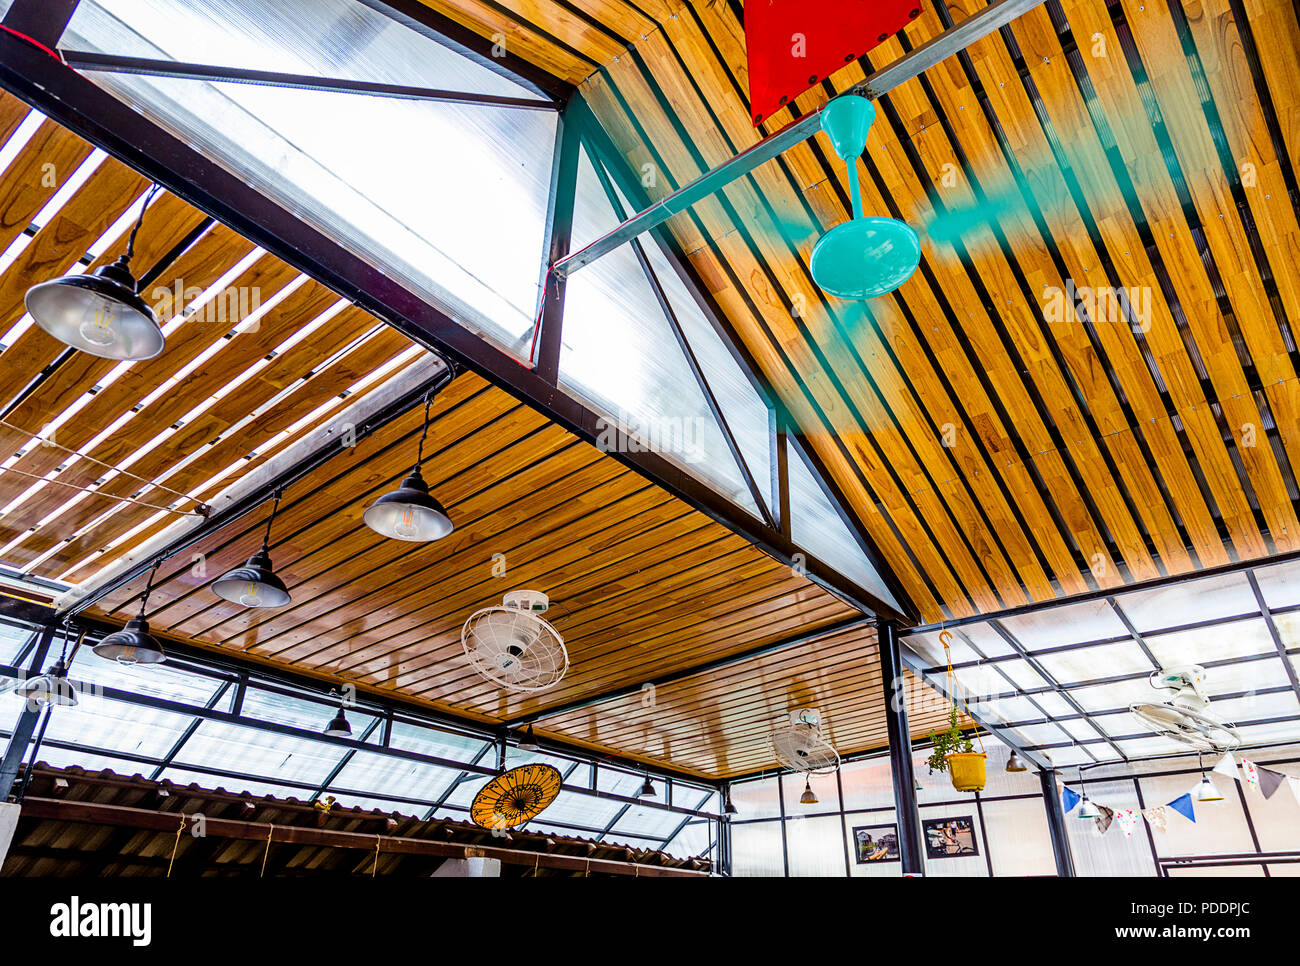 Luglio 2017, il Nook Ristorante, tonalità, VN.,a soffitto. Un assortimento di materiali da costruzione utilizzati per rendere questo architettonico all'aperto, a soffitto Foto Stock